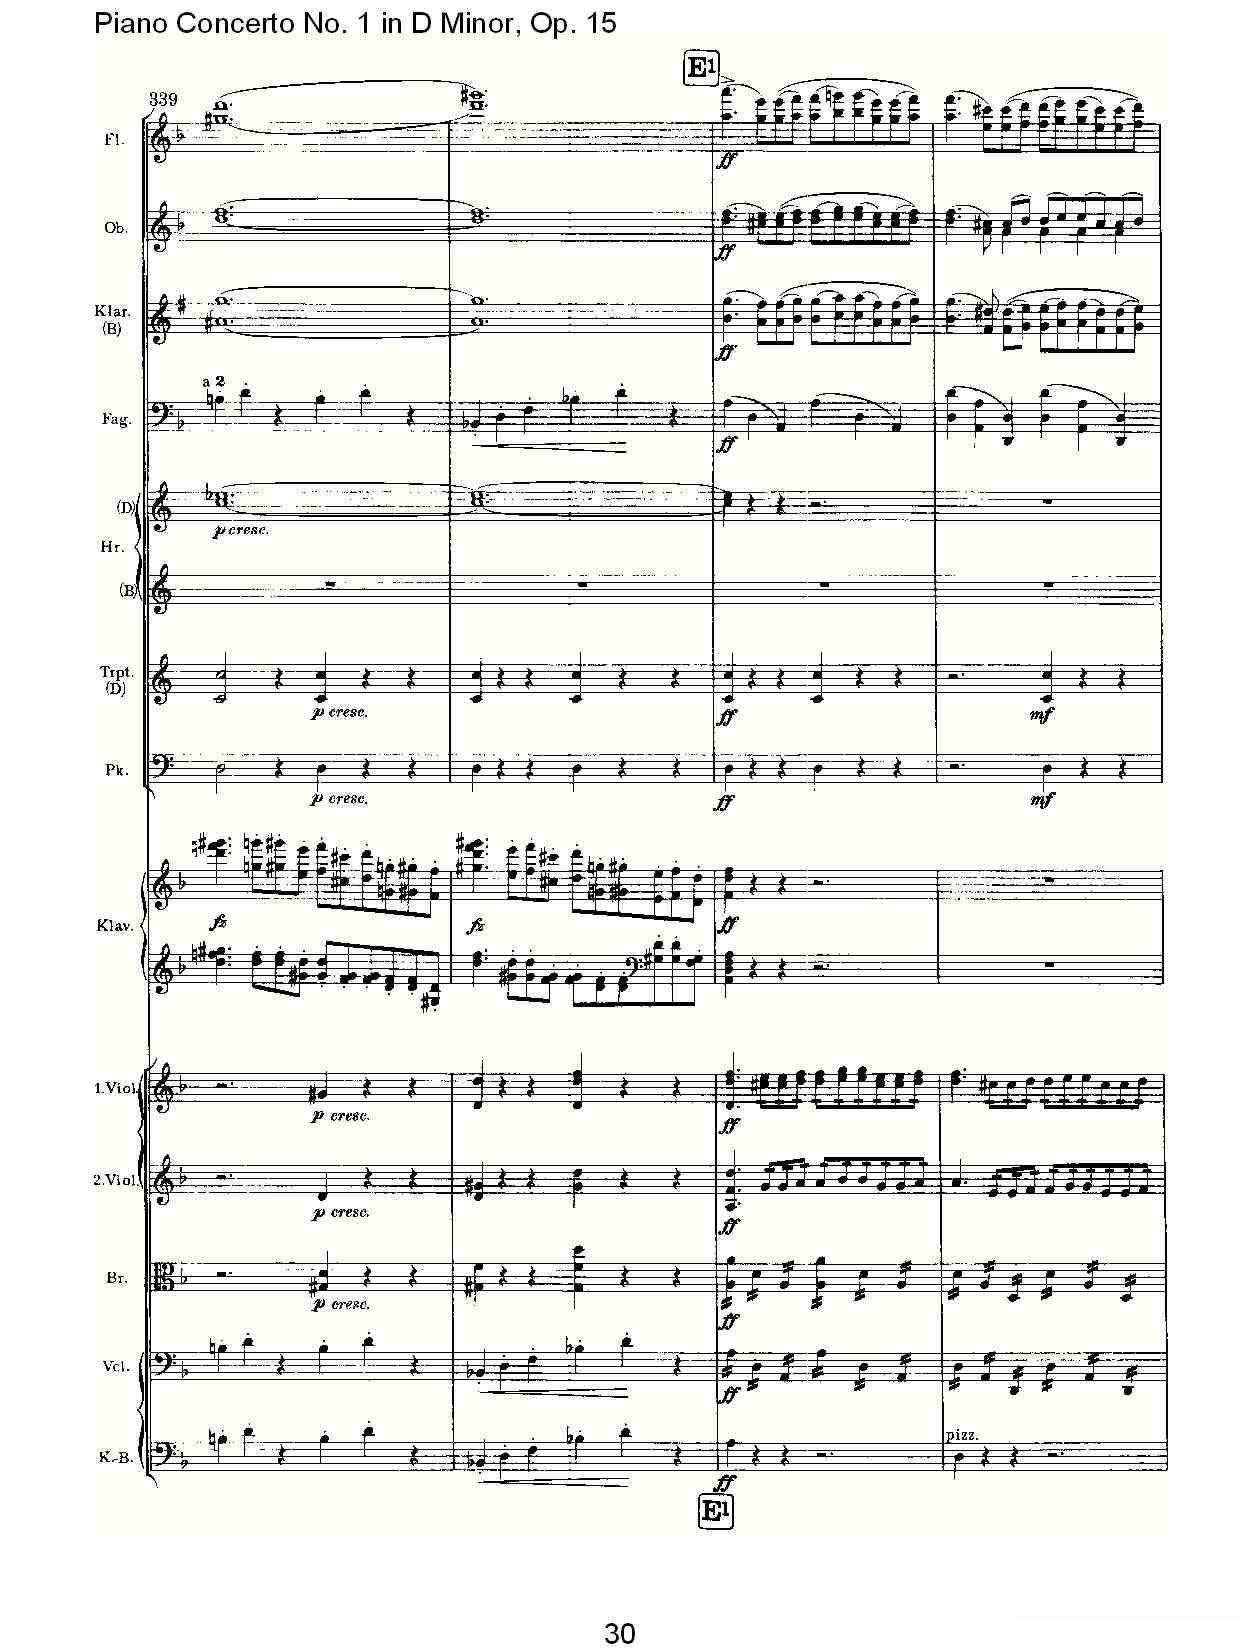 D小调钢琴第一协奏曲, Op.15第一乐章（一）钢琴曲谱（图30）